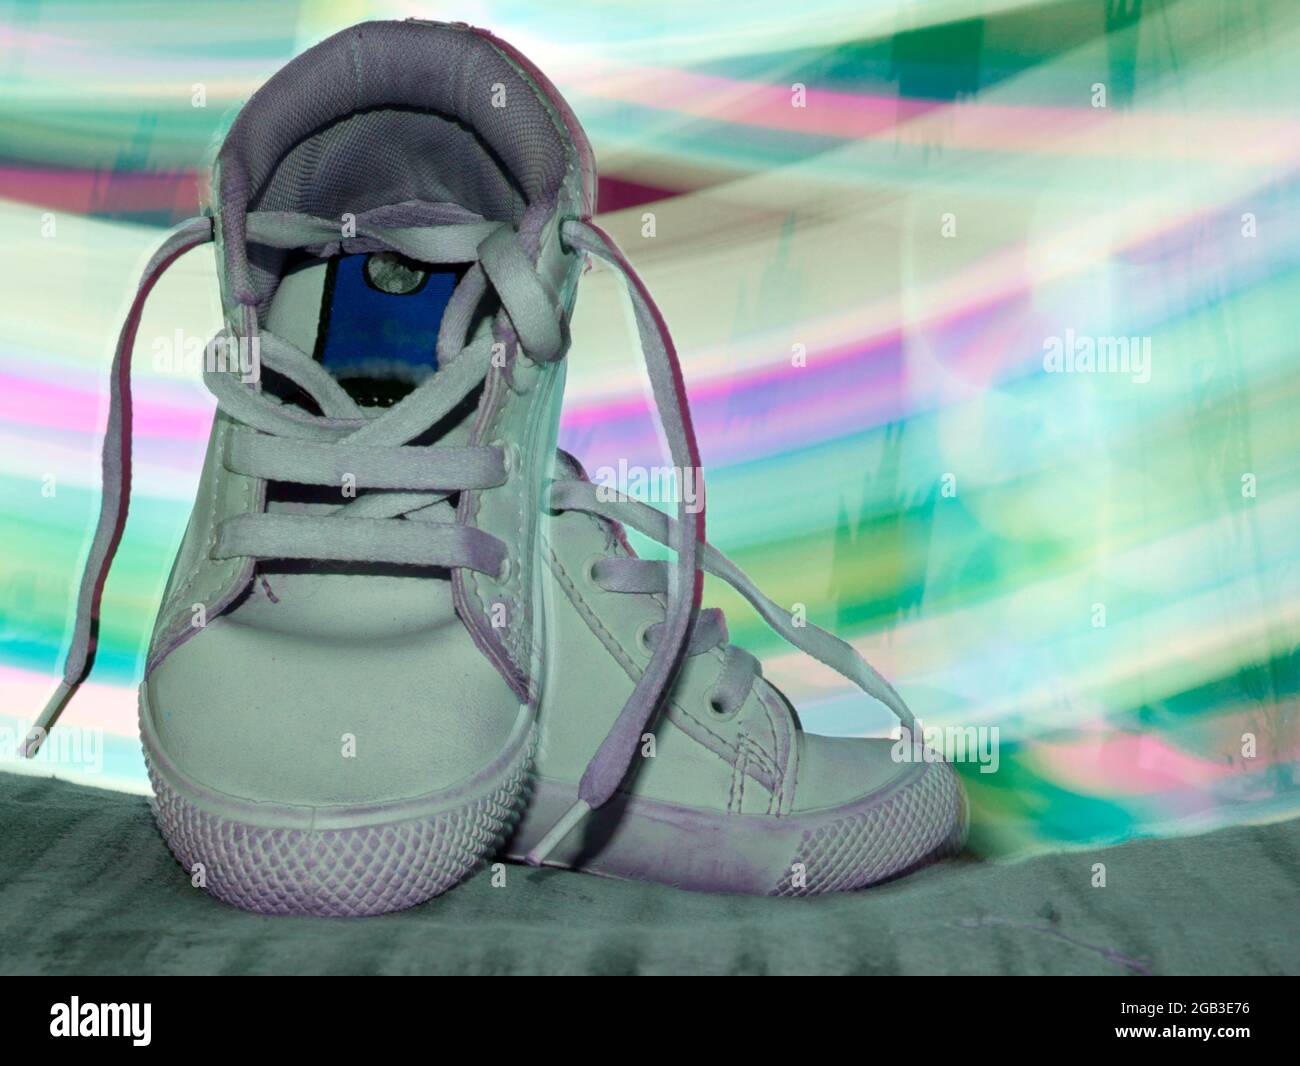 Chaussures de sport présentées avec un effet de lumière arc-en-ciel pour une image commerciale du produit. Banque D'Images